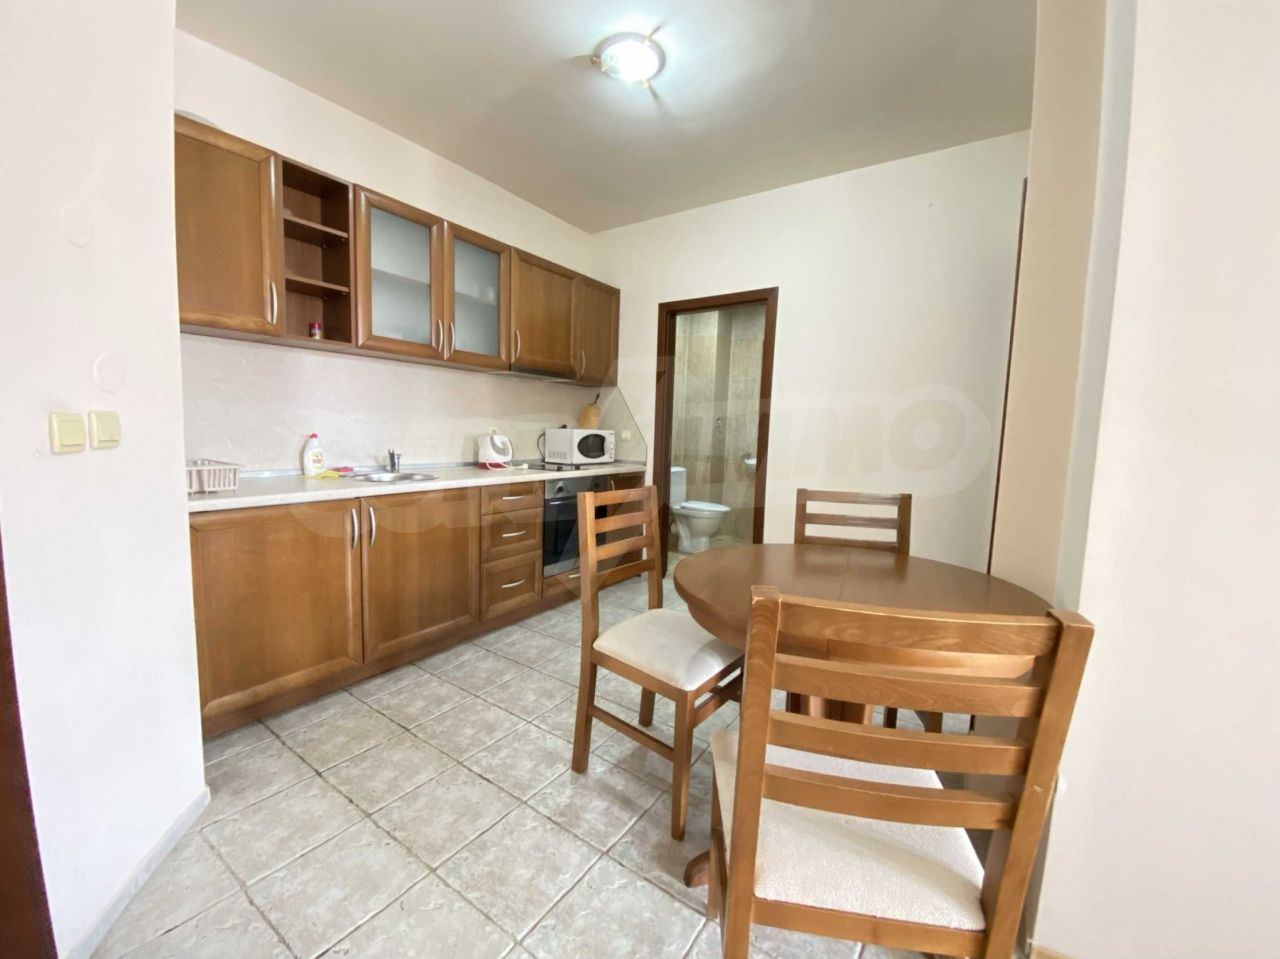 Apartment in Bansko, Bulgaria, 55 sq.m - picture 1